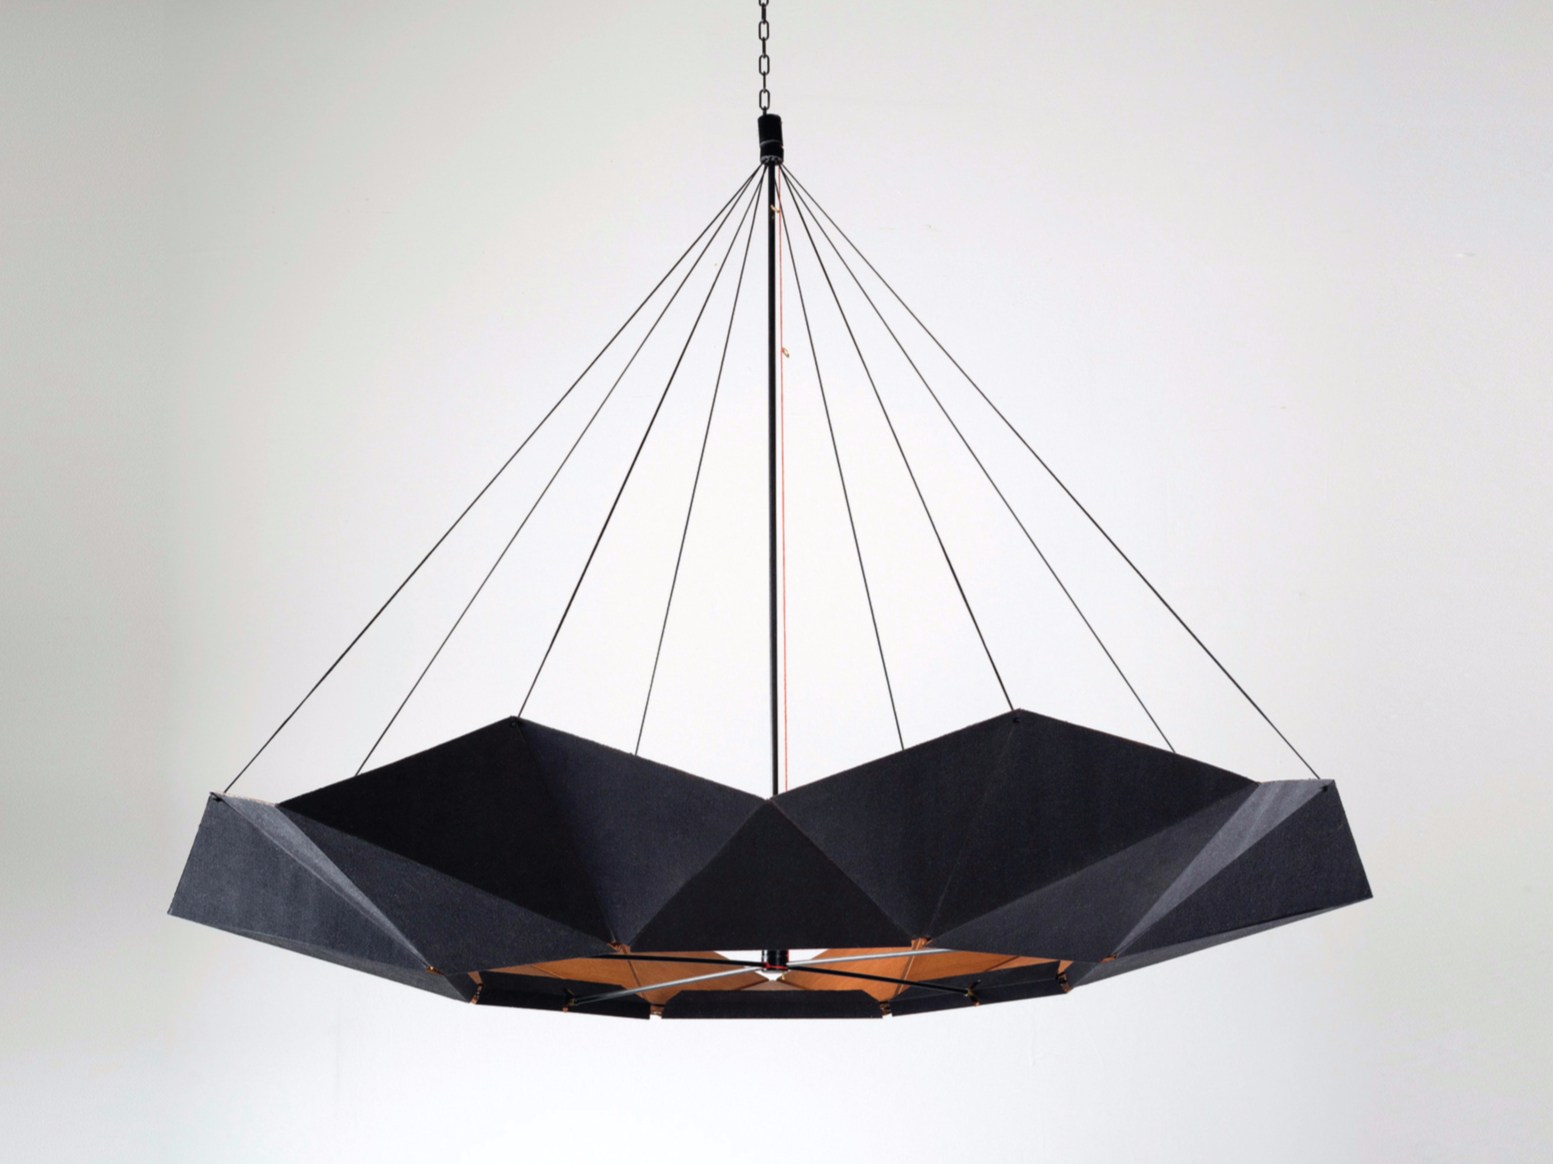 inMOOV Lamp by Studio Lieven